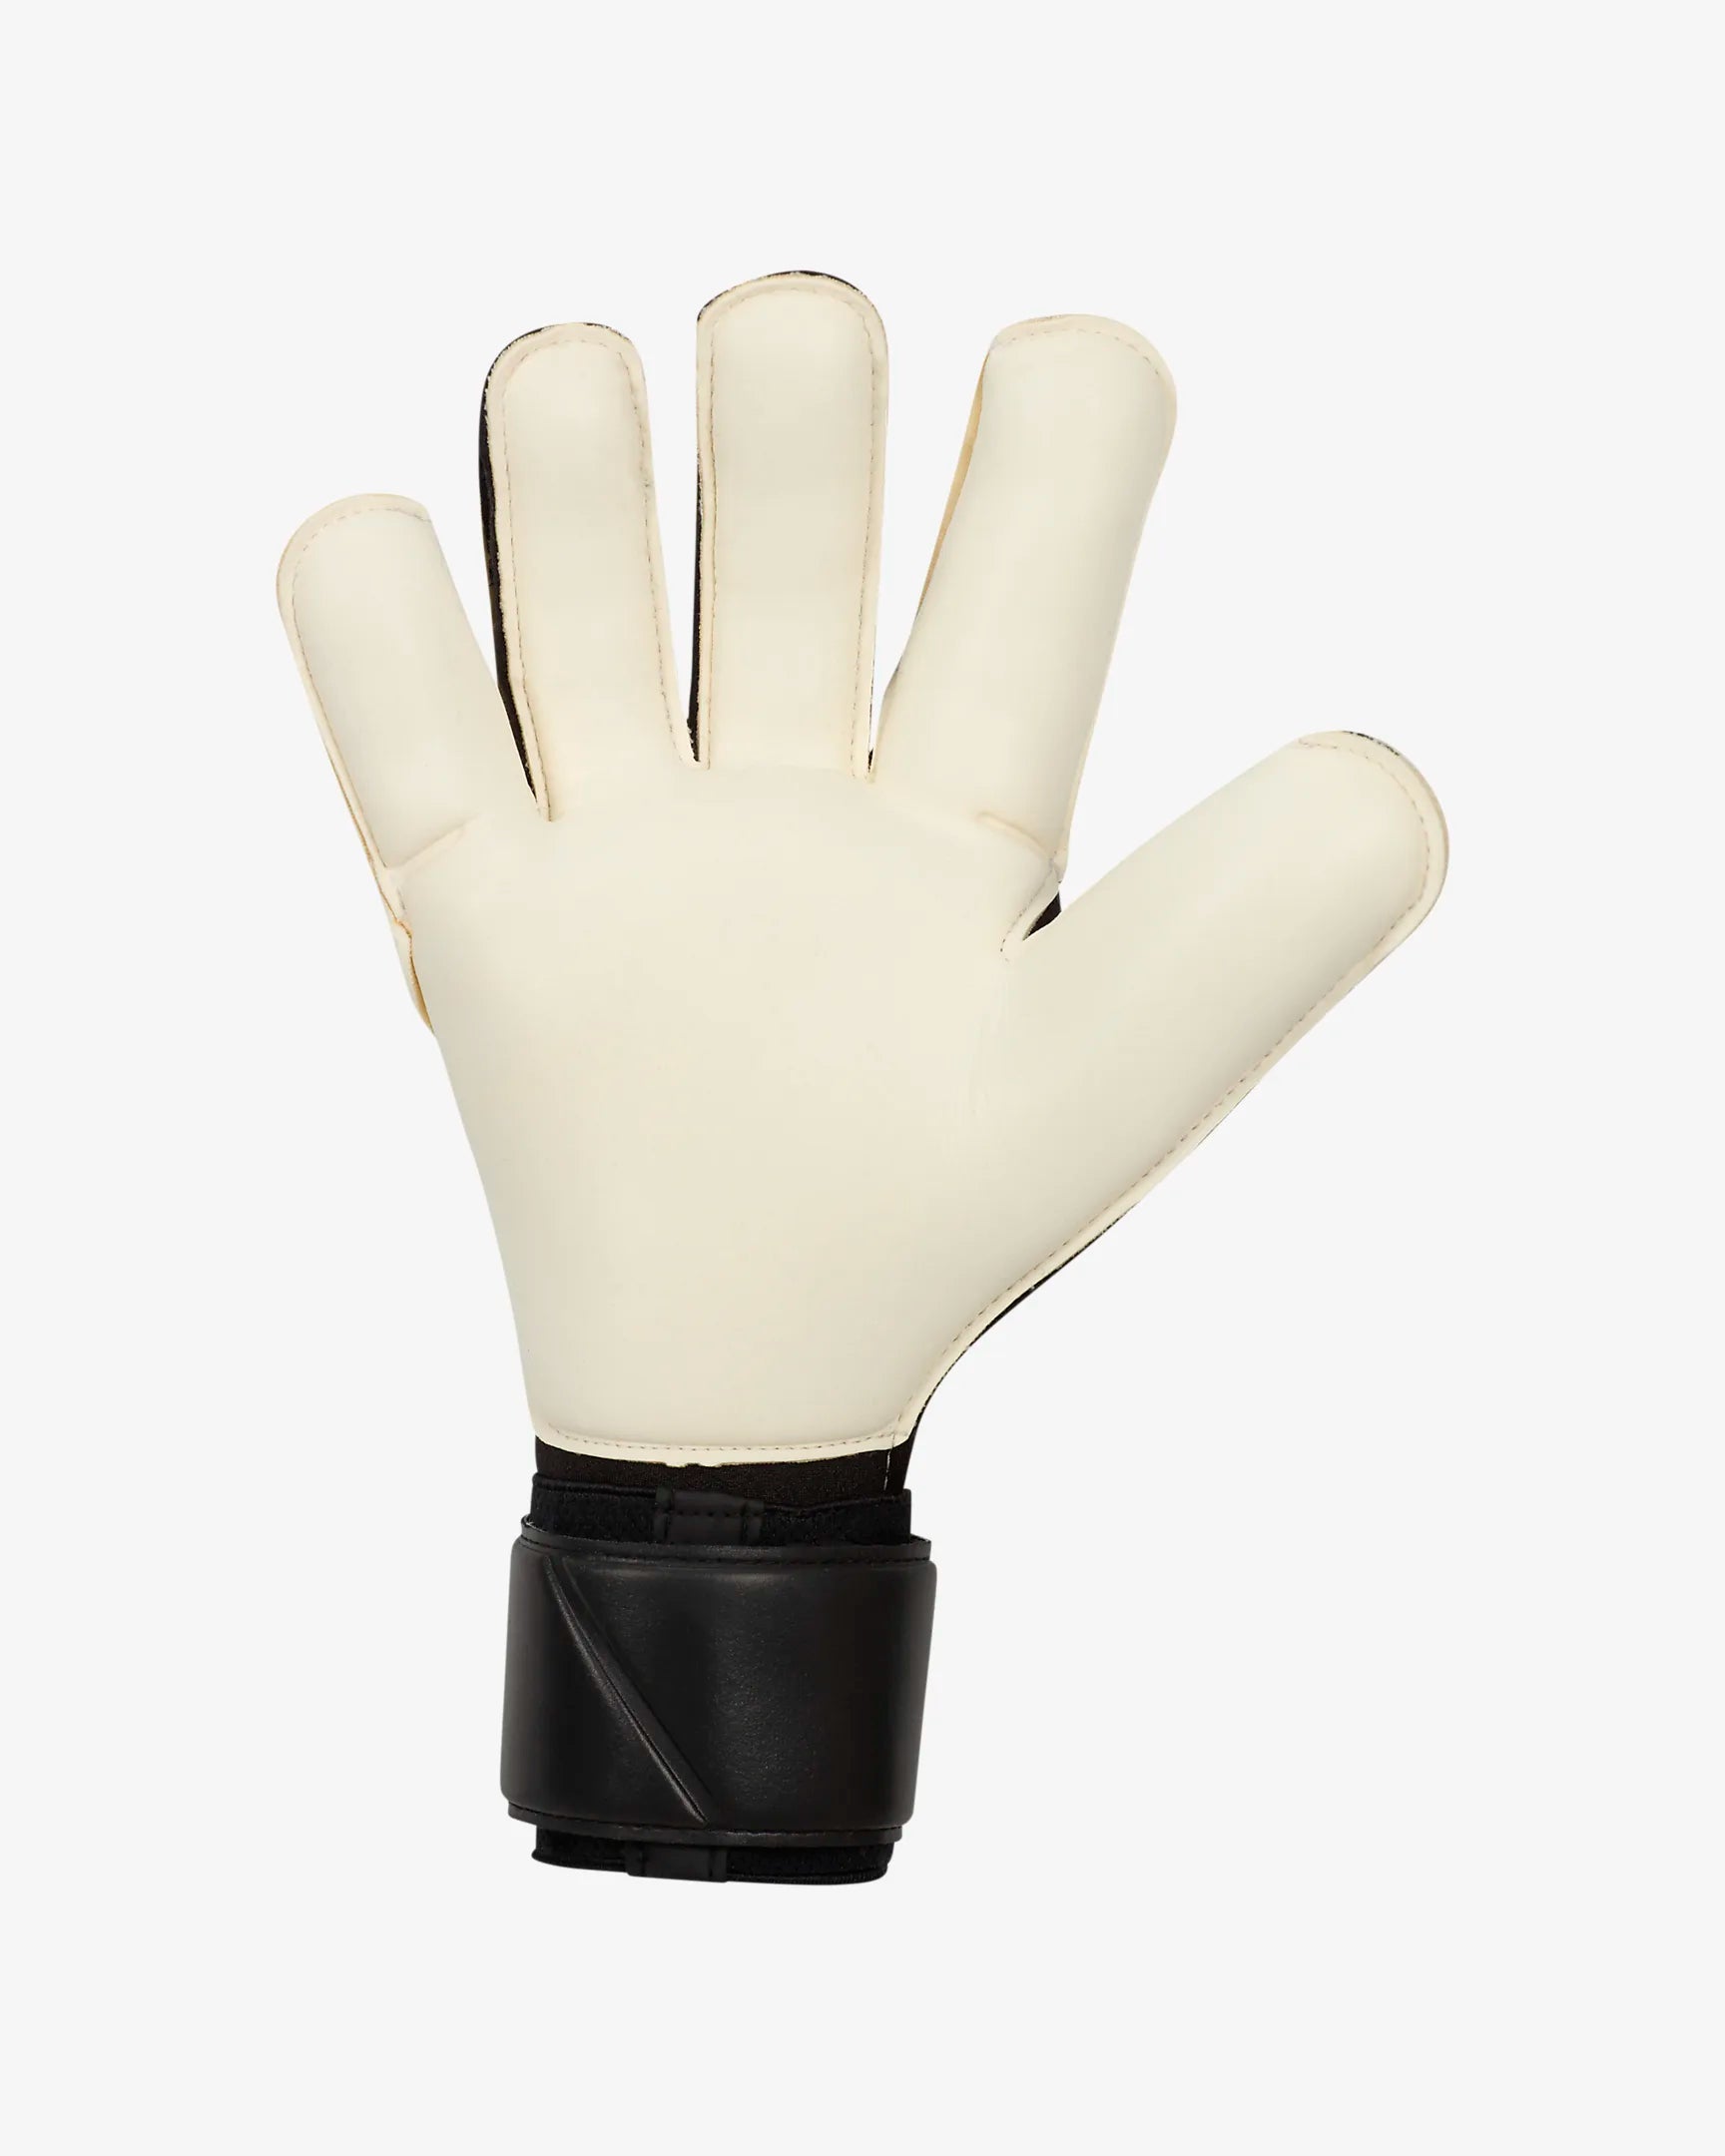 Senior Grip 3 Goalkeeper Gloves